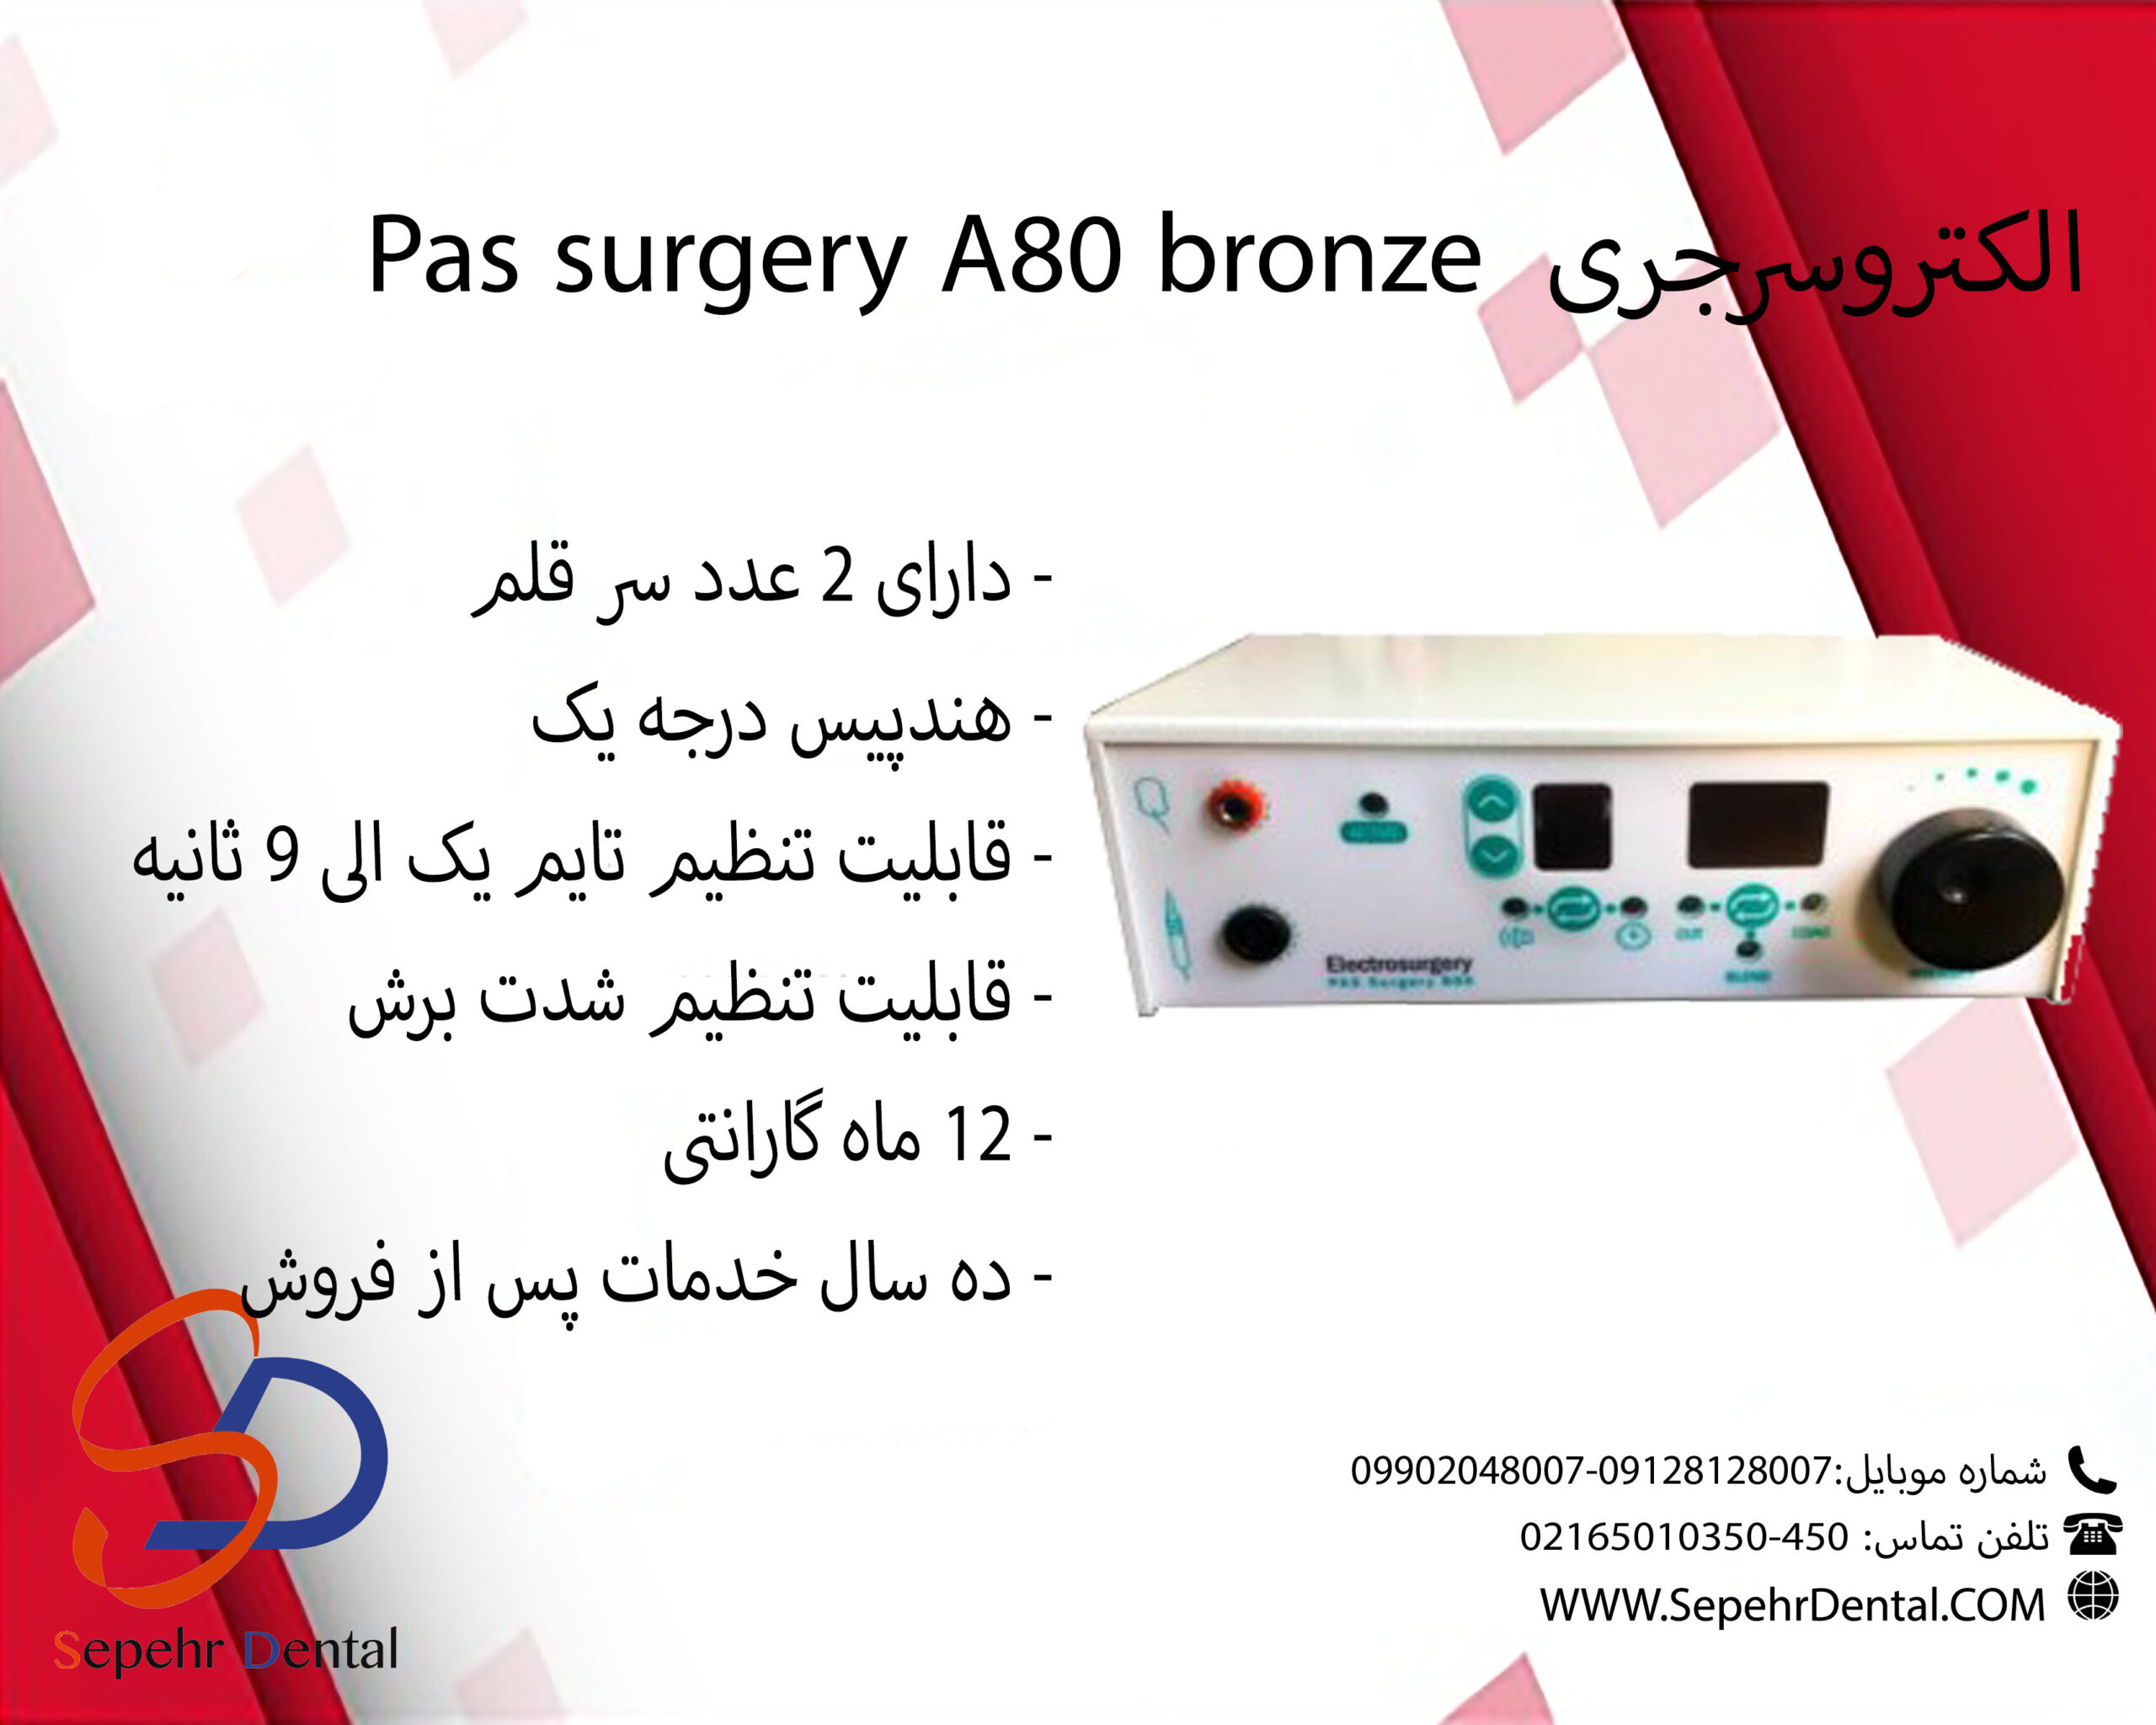 الکتروسرجری Pas surgery A80 Bronze